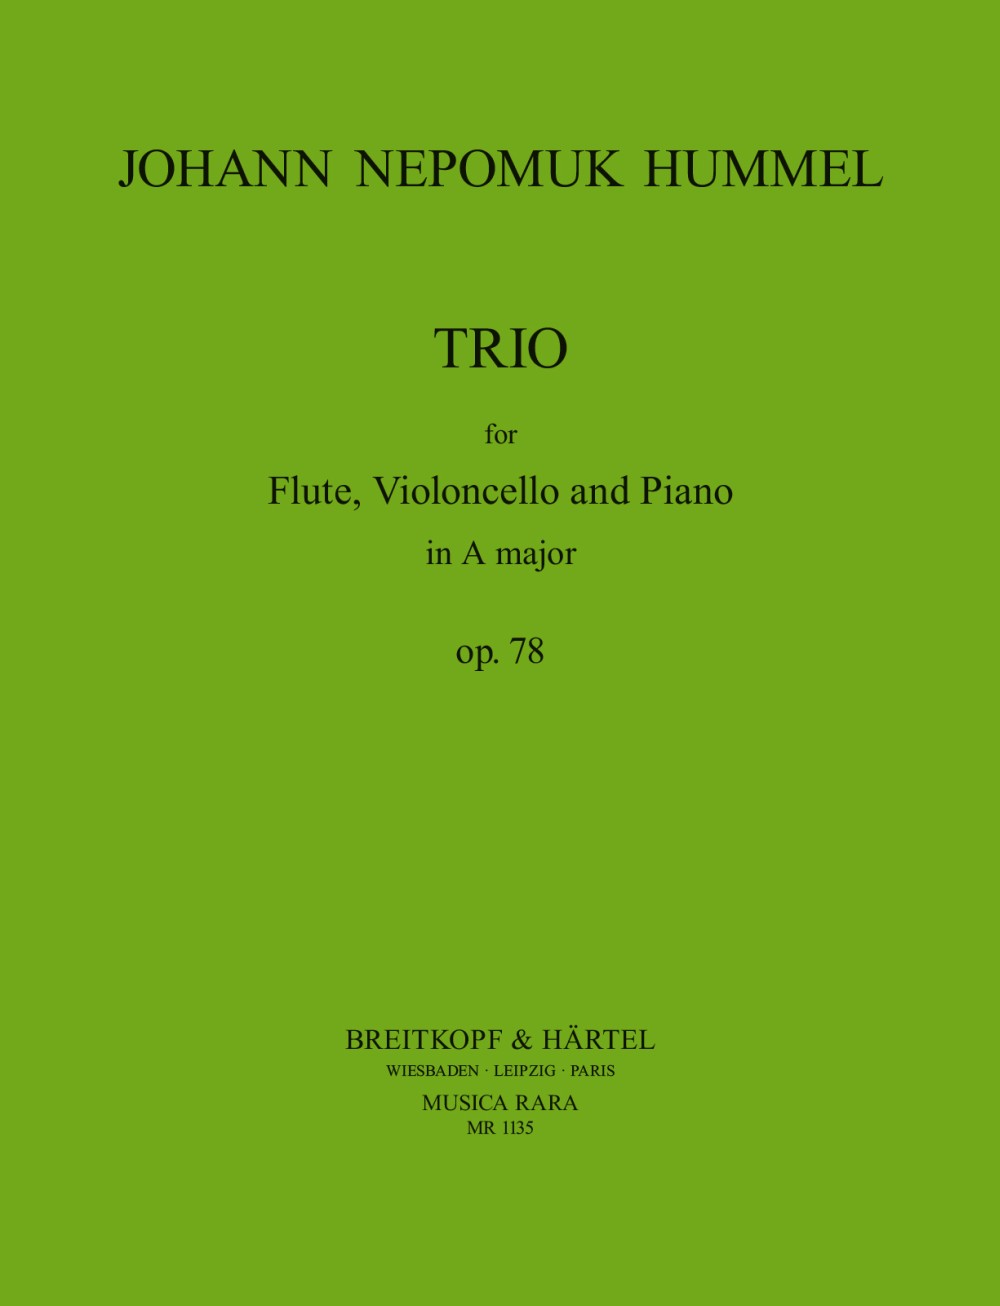 Hummel Trio Op. 78 in A major